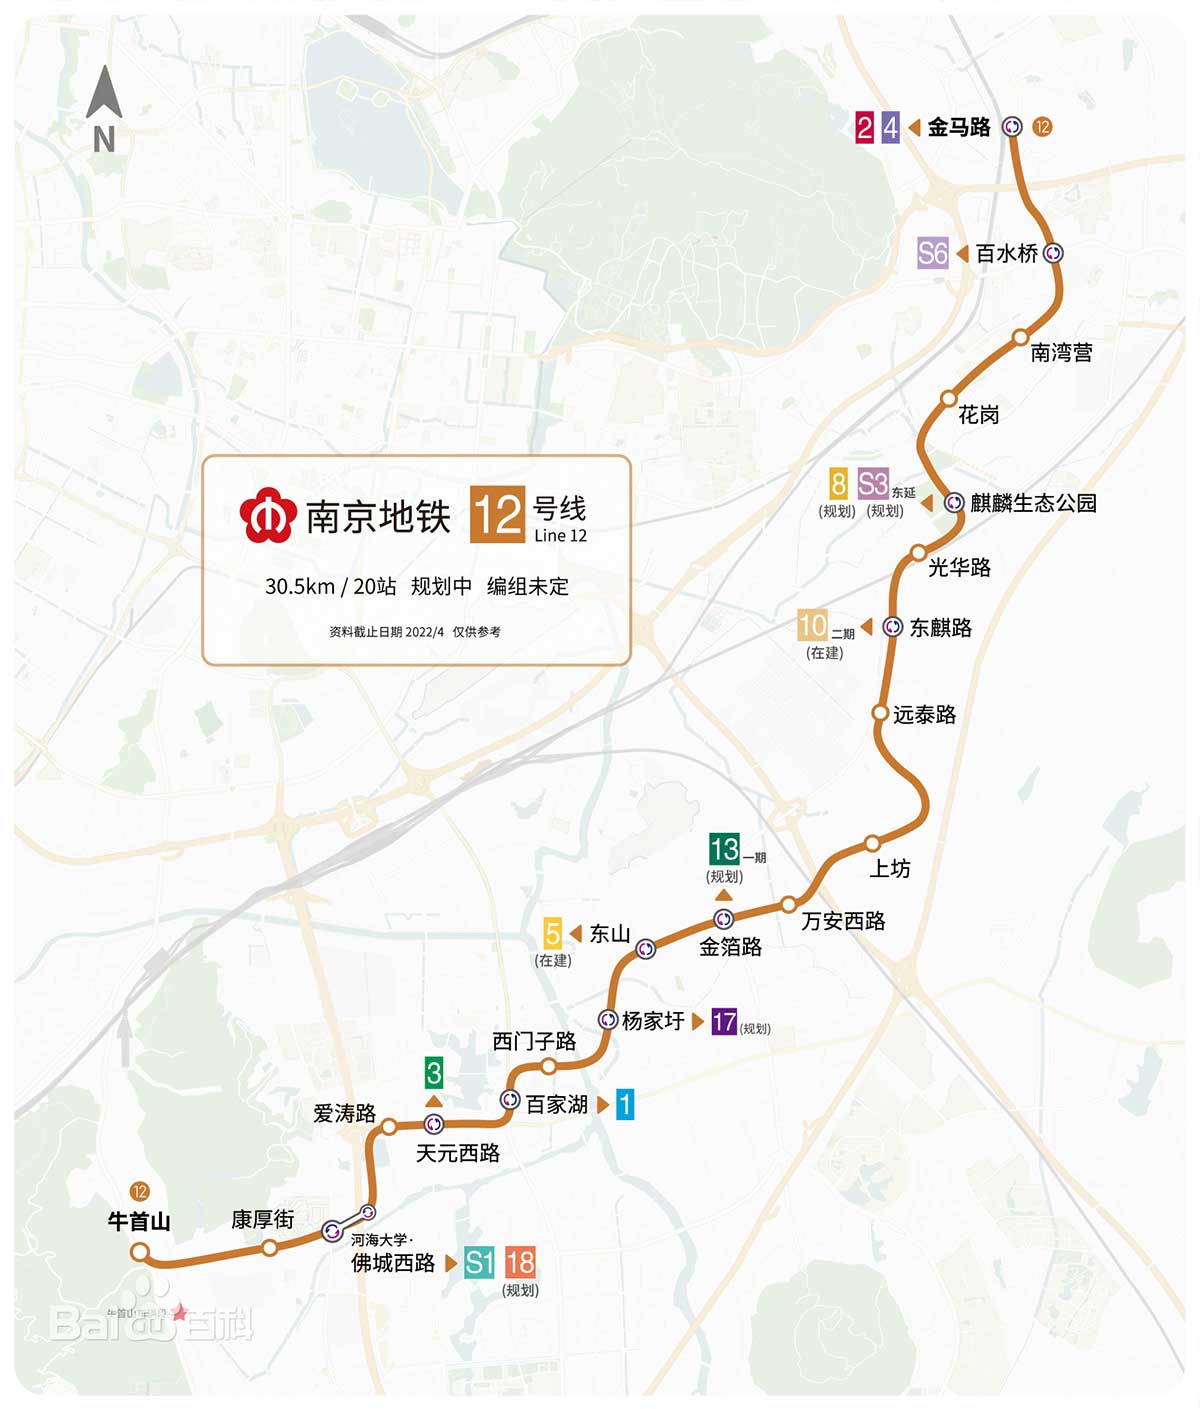 南京地铁远期线网规划图2035 及各条线路建设规划情况介绍 v1.8 - 知乎